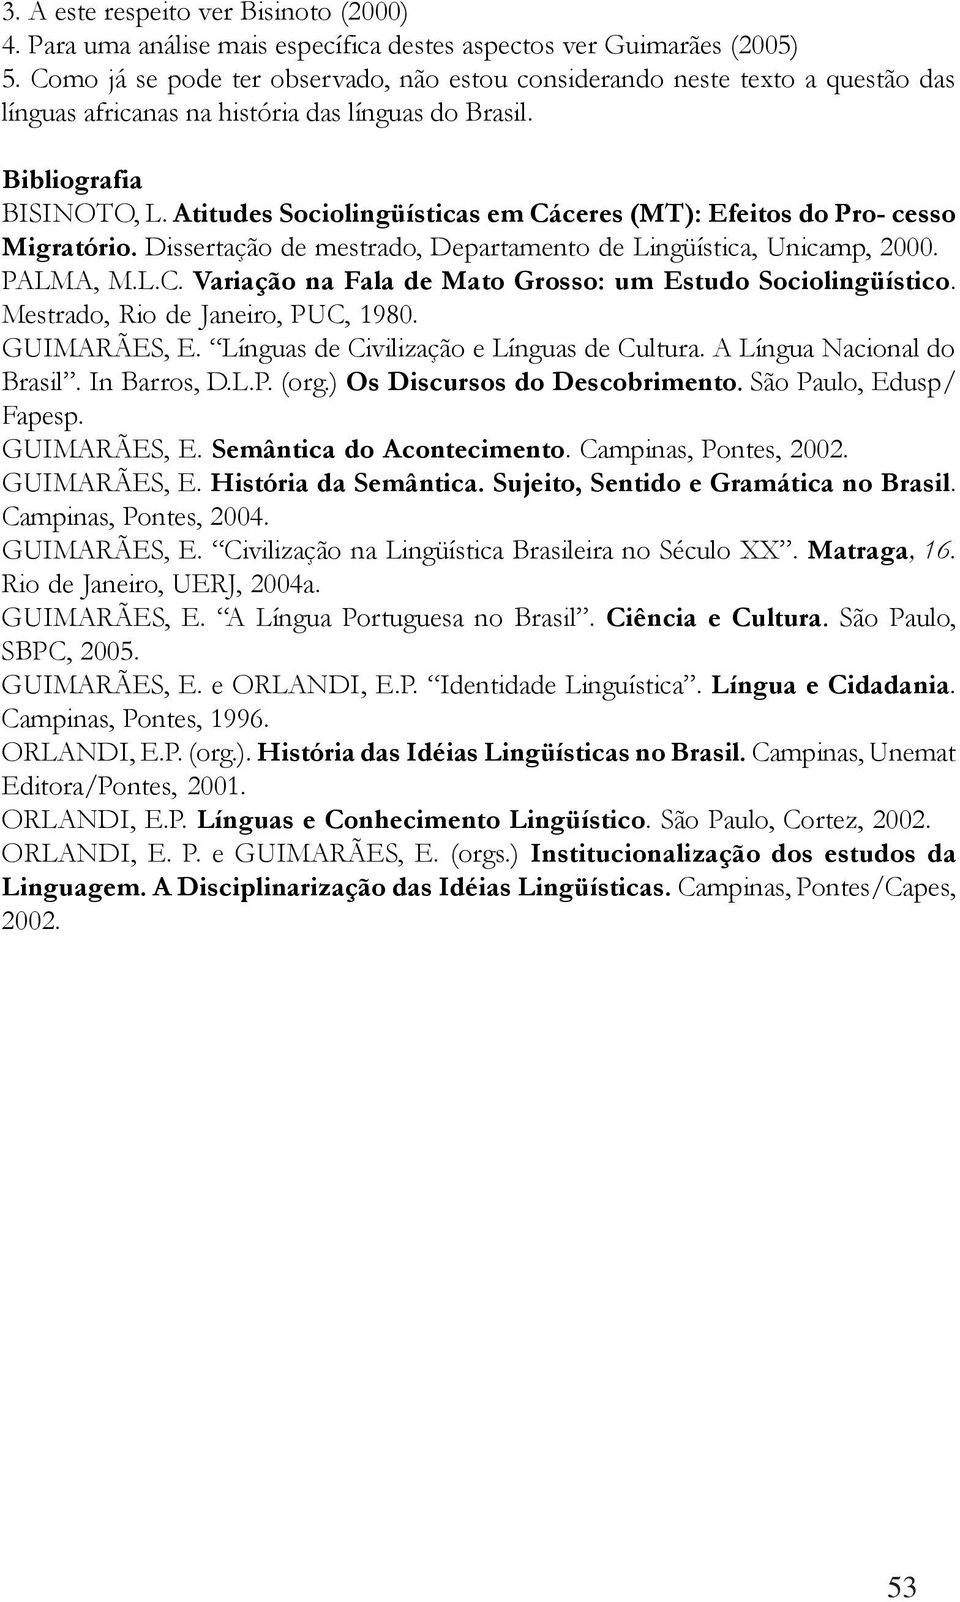 Atitudes Sociolingüísticas em Cáceres (MT): Efeitos do Pro- cesso Migratório. Dissertação de mestrado, Departamento de Lingüística, Unicamp, 2000. PALMA, M.L.C. Variação na Fala de Mato Grosso: um Estudo Sociolingüístico.